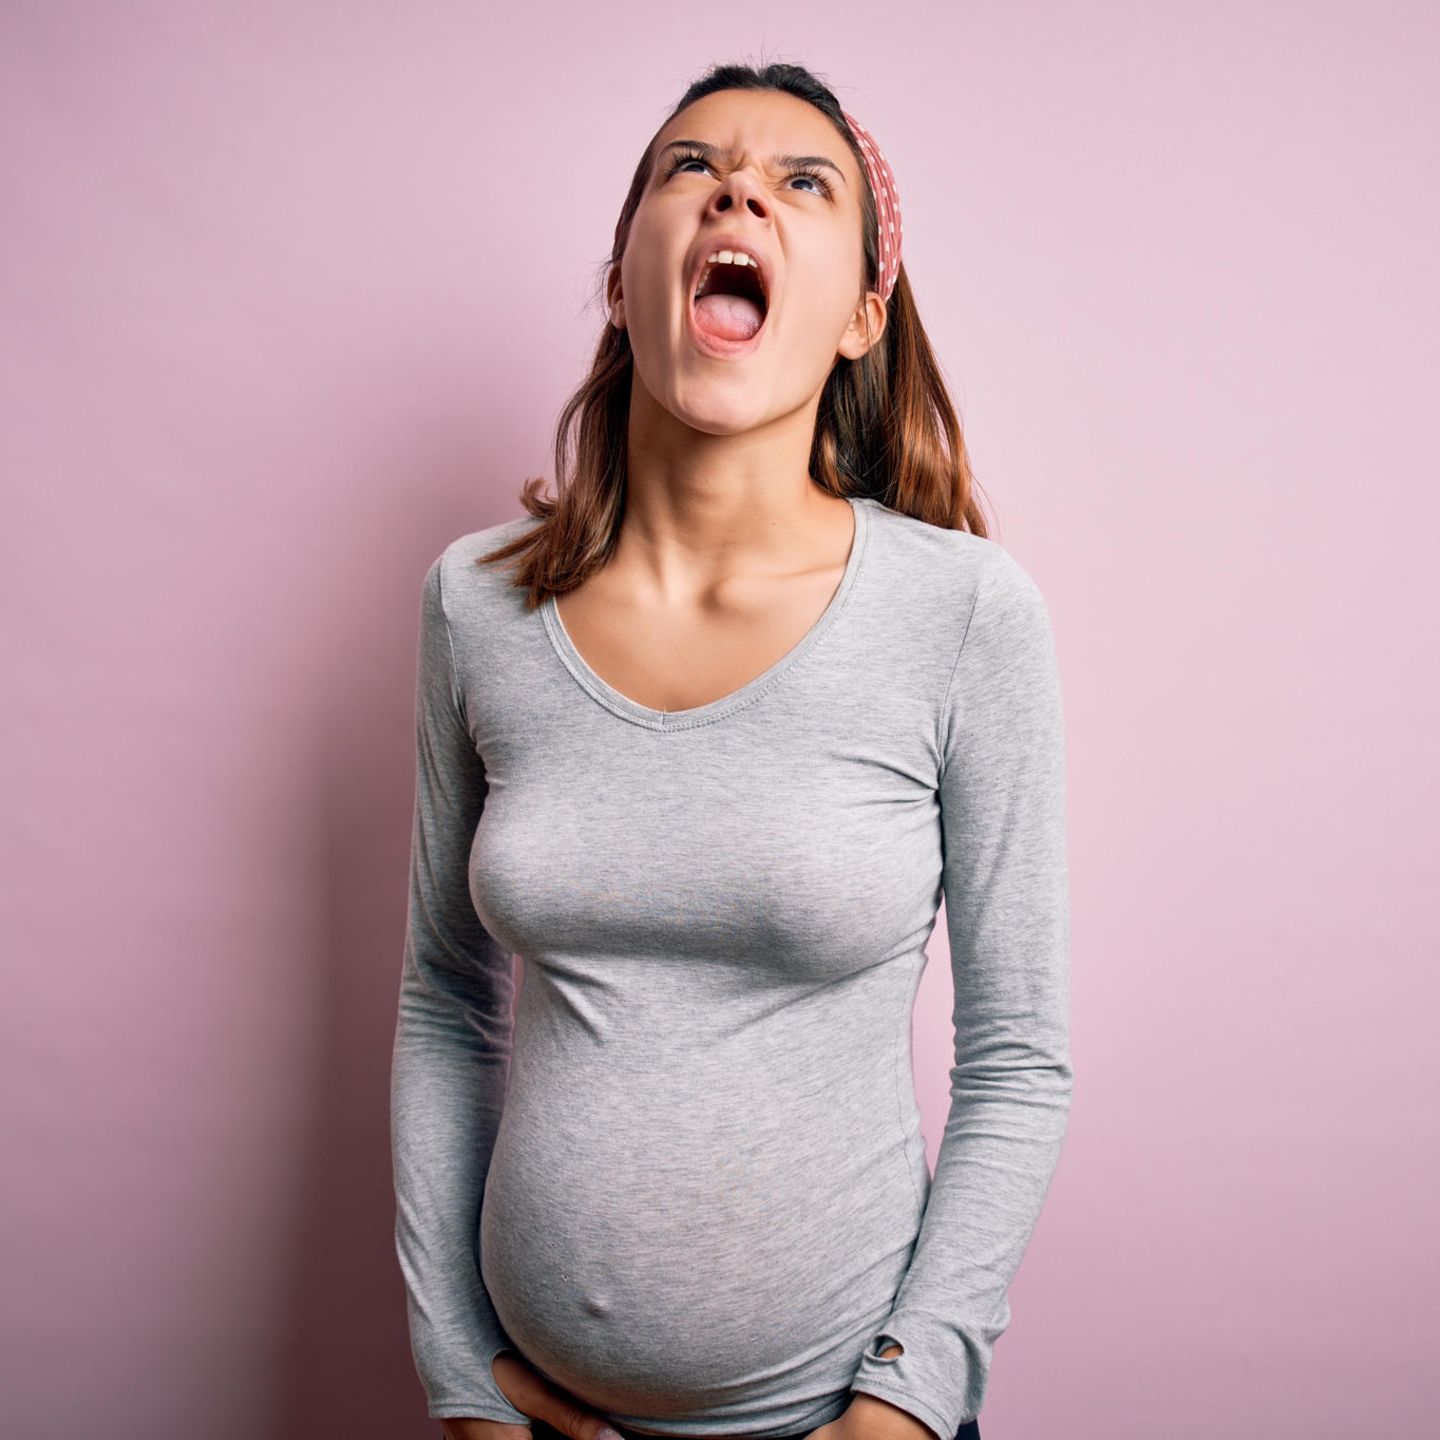 Weg mit den Schuldgefühlen!: Schwangere flippt aus